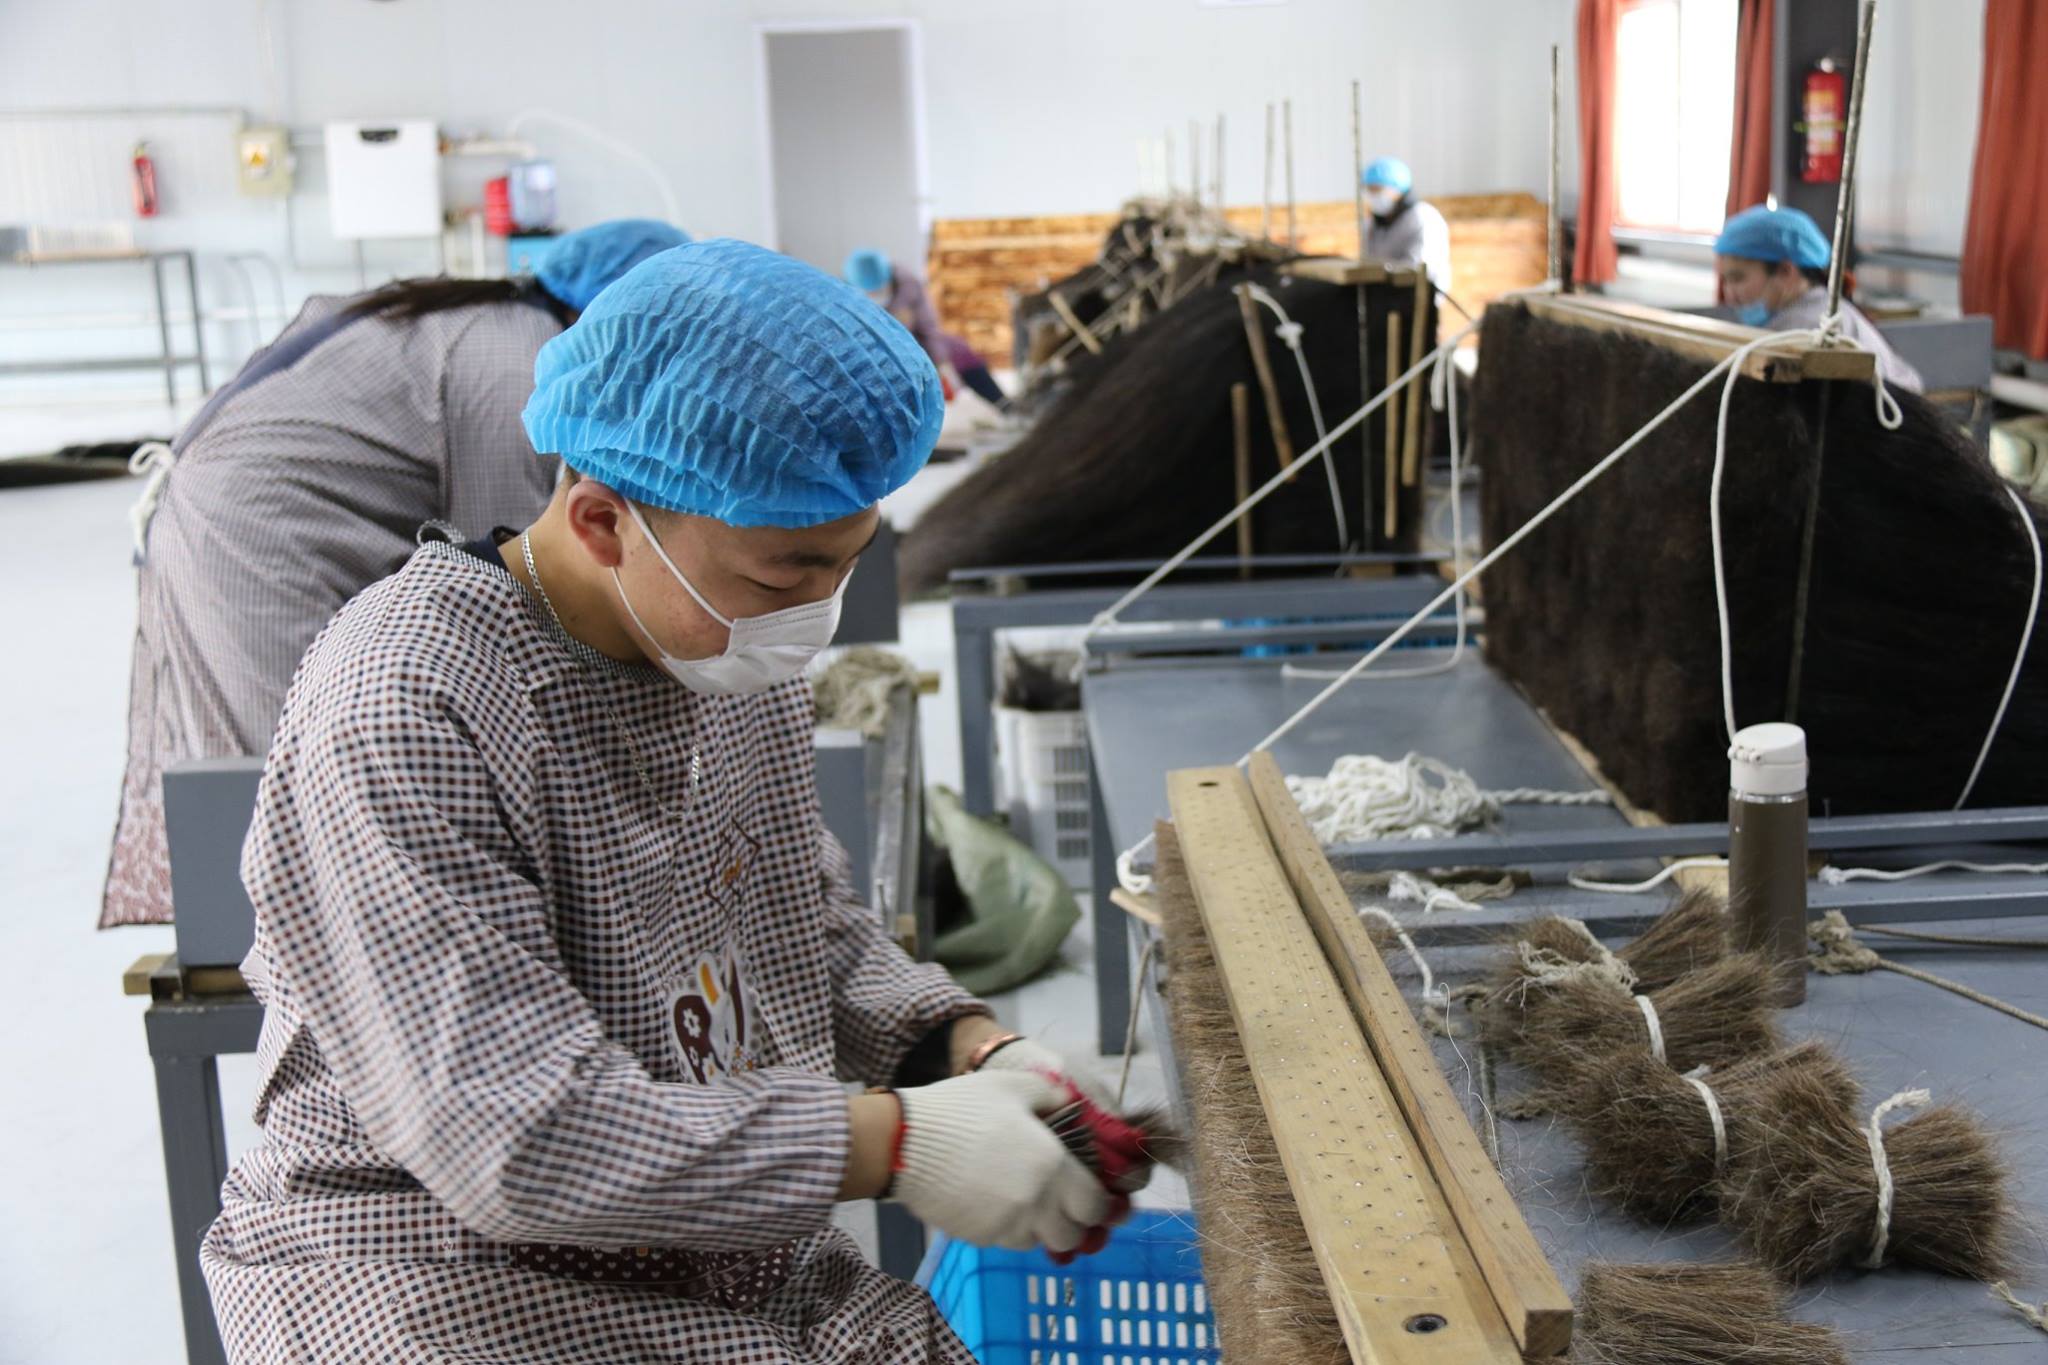 Монгол адууны дэл, сүүл, сарлагийн саваг, тэмээний эр ноосыг боловсруулан экспортод гаргах үйлдвэр ашиглалтанд орлоо